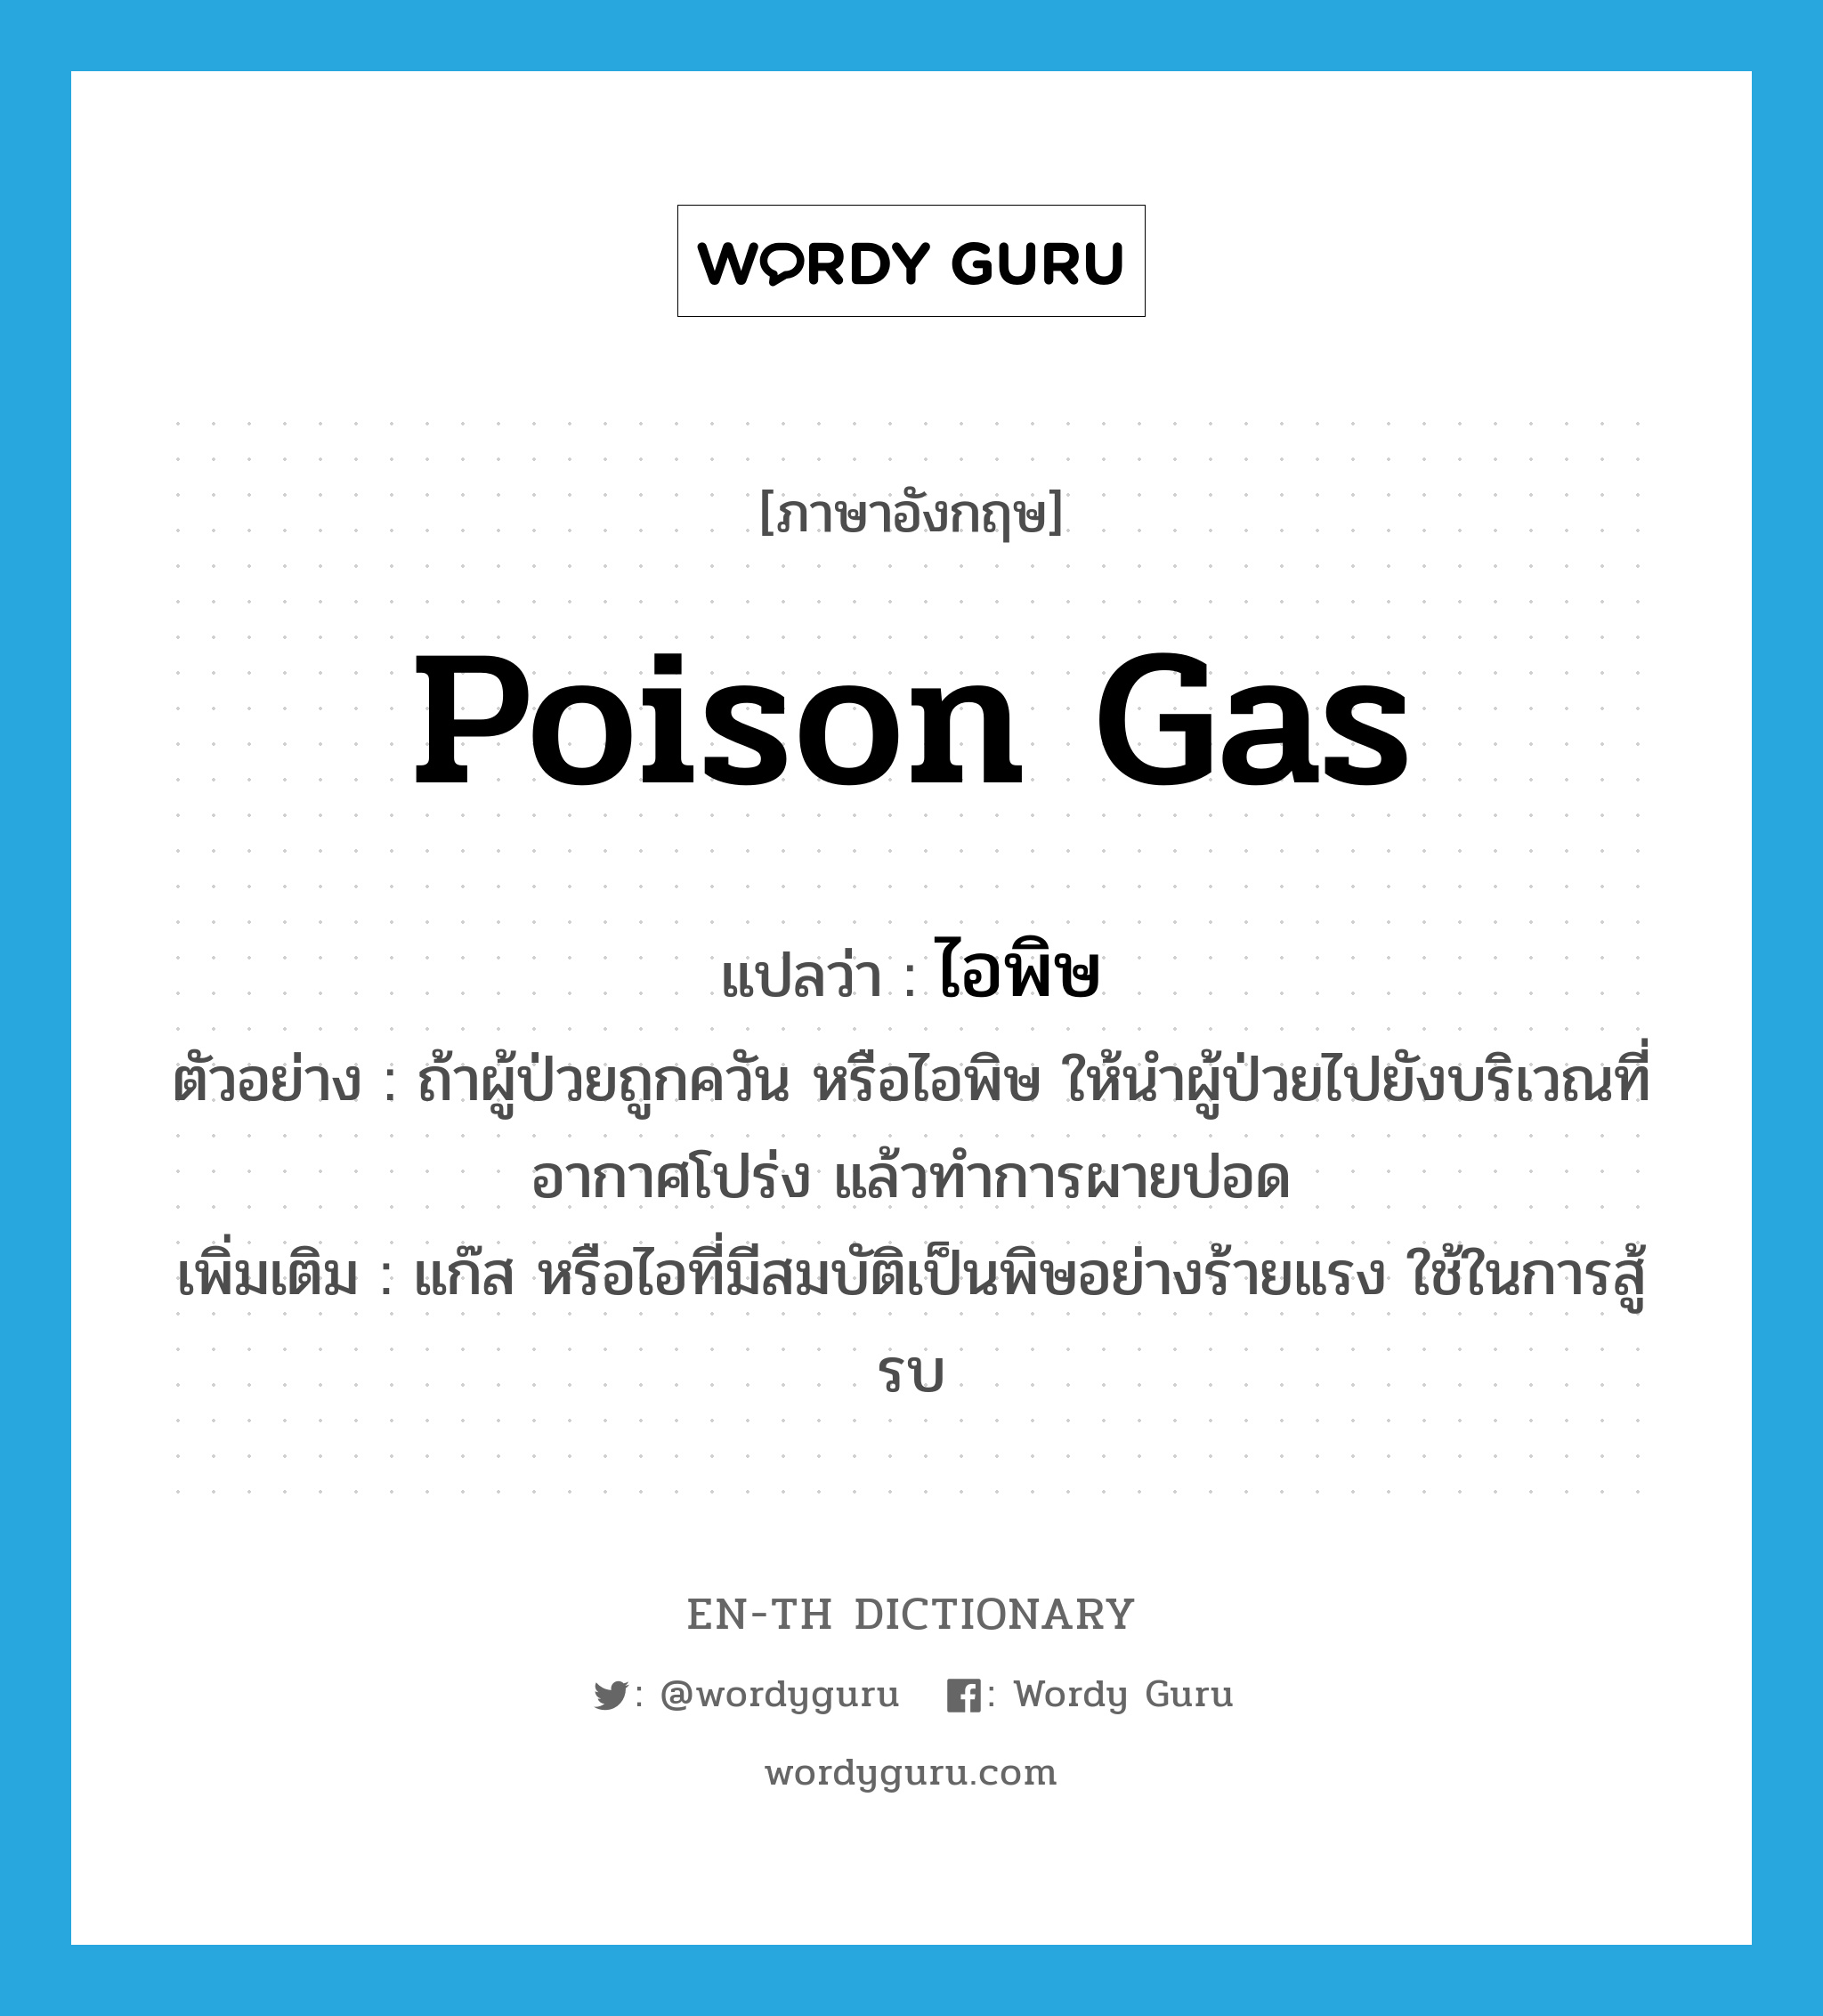 poison gas แปลว่า?, คำศัพท์ภาษาอังกฤษ poison gas แปลว่า ไอพิษ ประเภท N ตัวอย่าง ถ้าผู้ป่วยถูกควัน หรือไอพิษ ให้นำผู้ป่วยไปยังบริเวณที่อากาศโปร่ง แล้วทำการผายปอด เพิ่มเติม แก๊ส หรือไอที่มีสมบัติเป็นพิษอย่างร้ายแรง ใช้ในการสู้รบ หมวด N